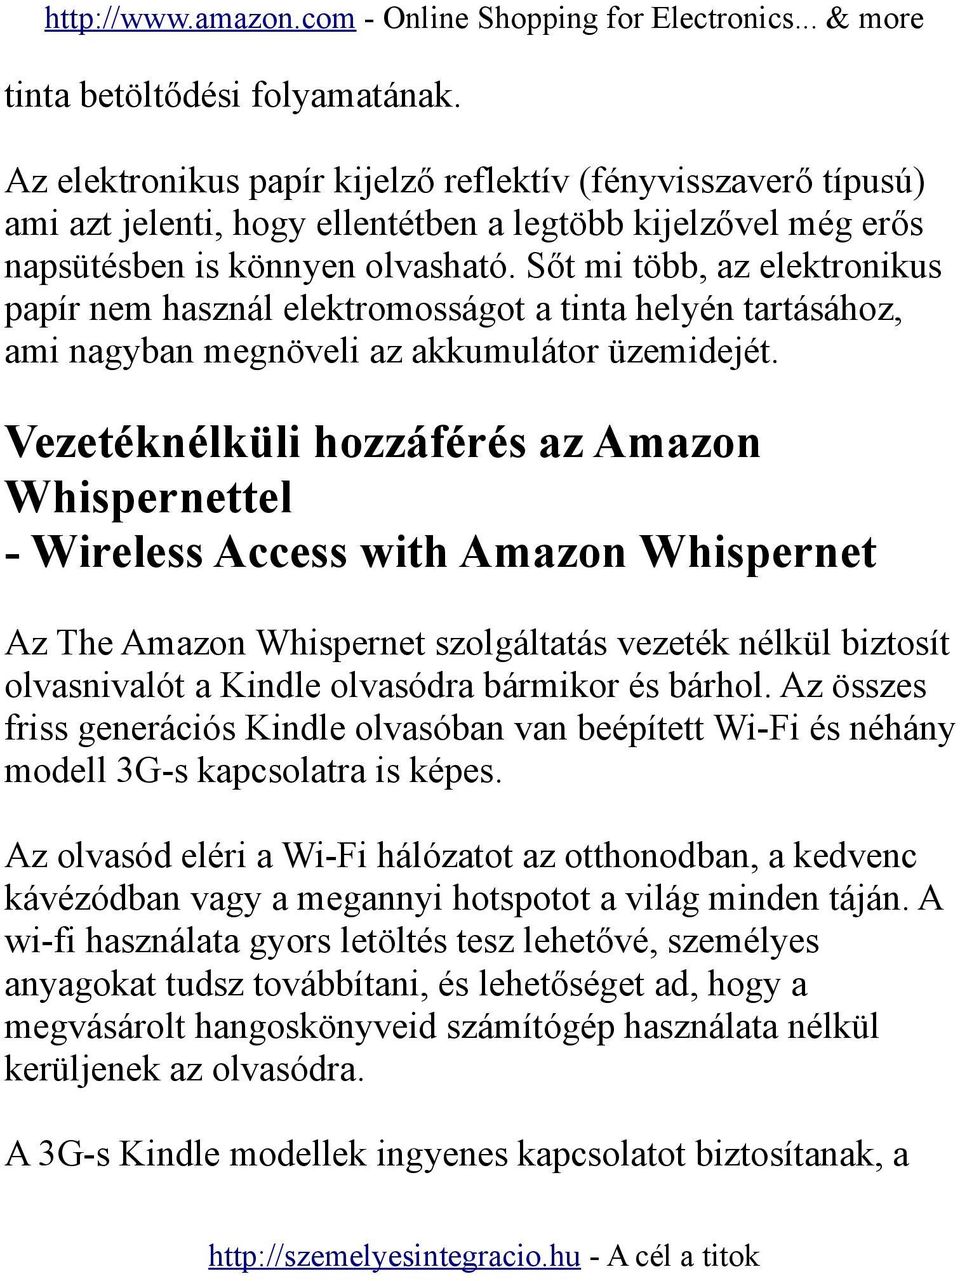 Vezetéknélküli hozzáférés az Amazon Whispernettel - Wireless Access with Amazon Whispernet Az The Amazon Whispernet szolgáltatás vezeték nélkül biztosít olvasnivalót a Kindle olvasódra bármikor és